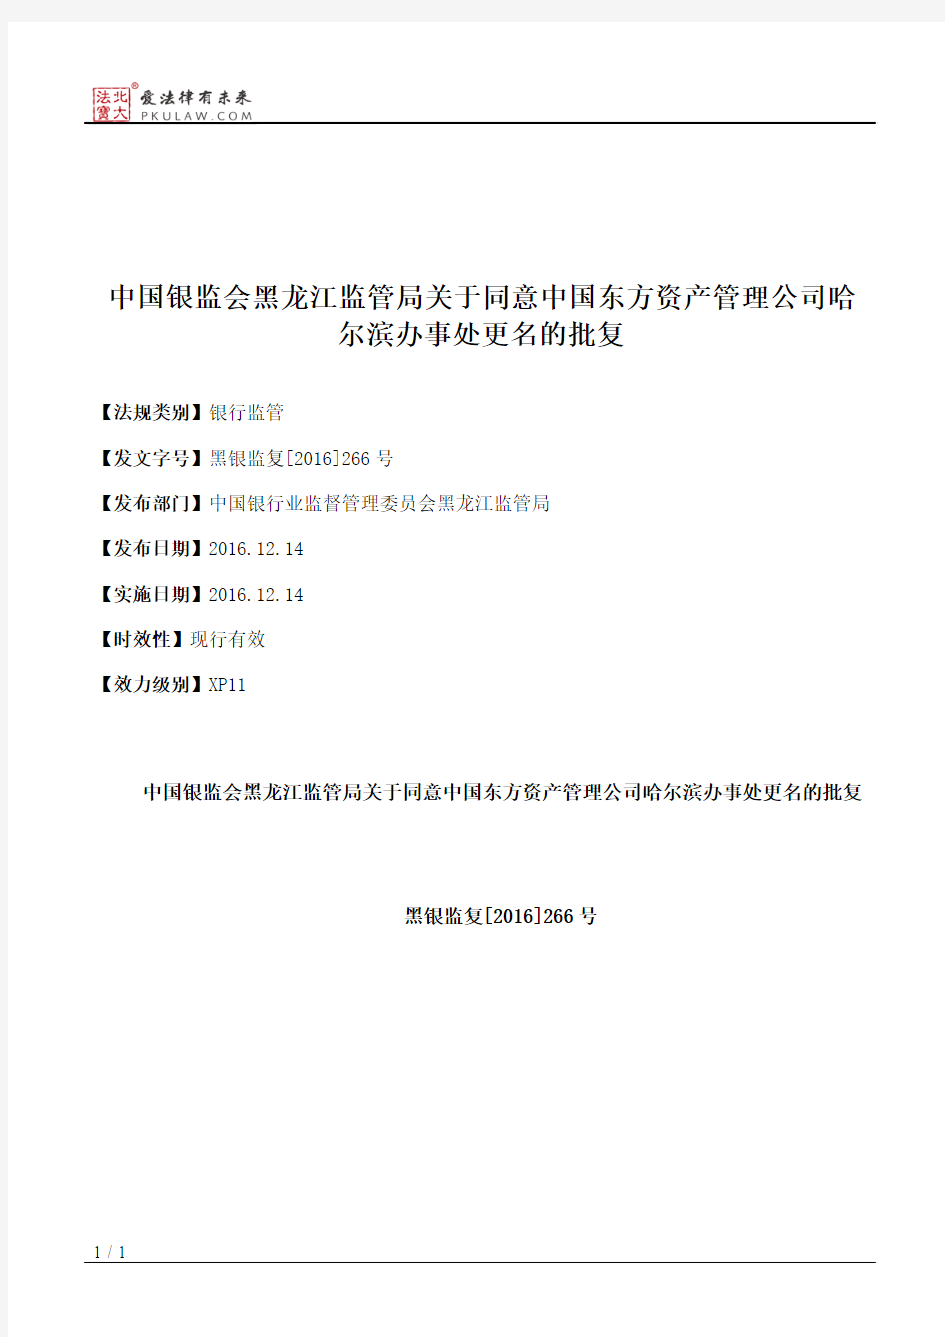 中国银监会黑龙江监管局关于同意中国东方资产管理公司哈尔滨办事